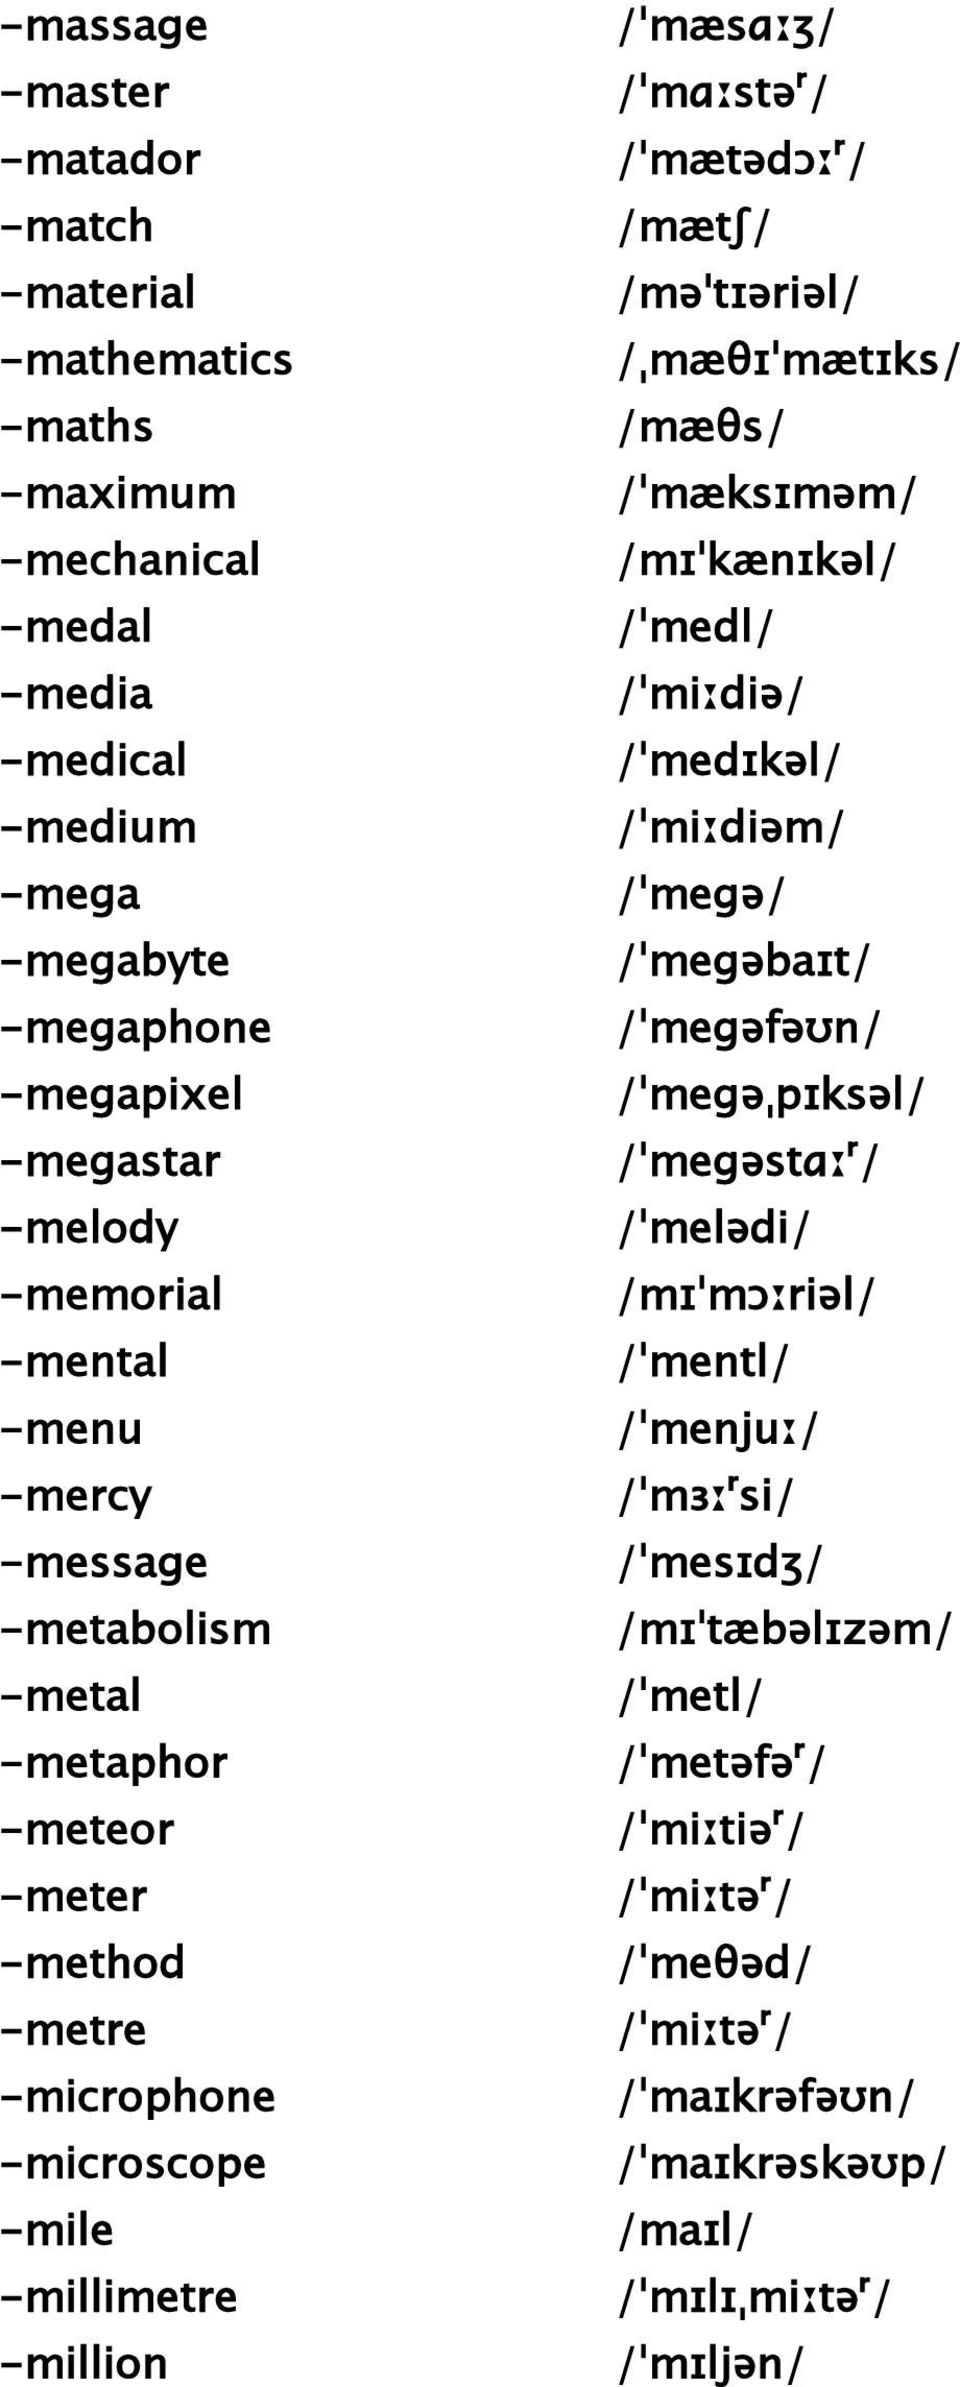 /ˈmegəstɑːʳ/ -melody /ˈmelədi/ -memorial /mɪˈmɔːriəl/ -mental /ˈmentl/ -menu /ˈmenjuː/ -mercy /ˈmɜːʳsi/ -message /ˈmesɪdʒ/ -metabolism /mɪˈtæbəlɪzəm/ -metal /ˈmetl/ -metaphor